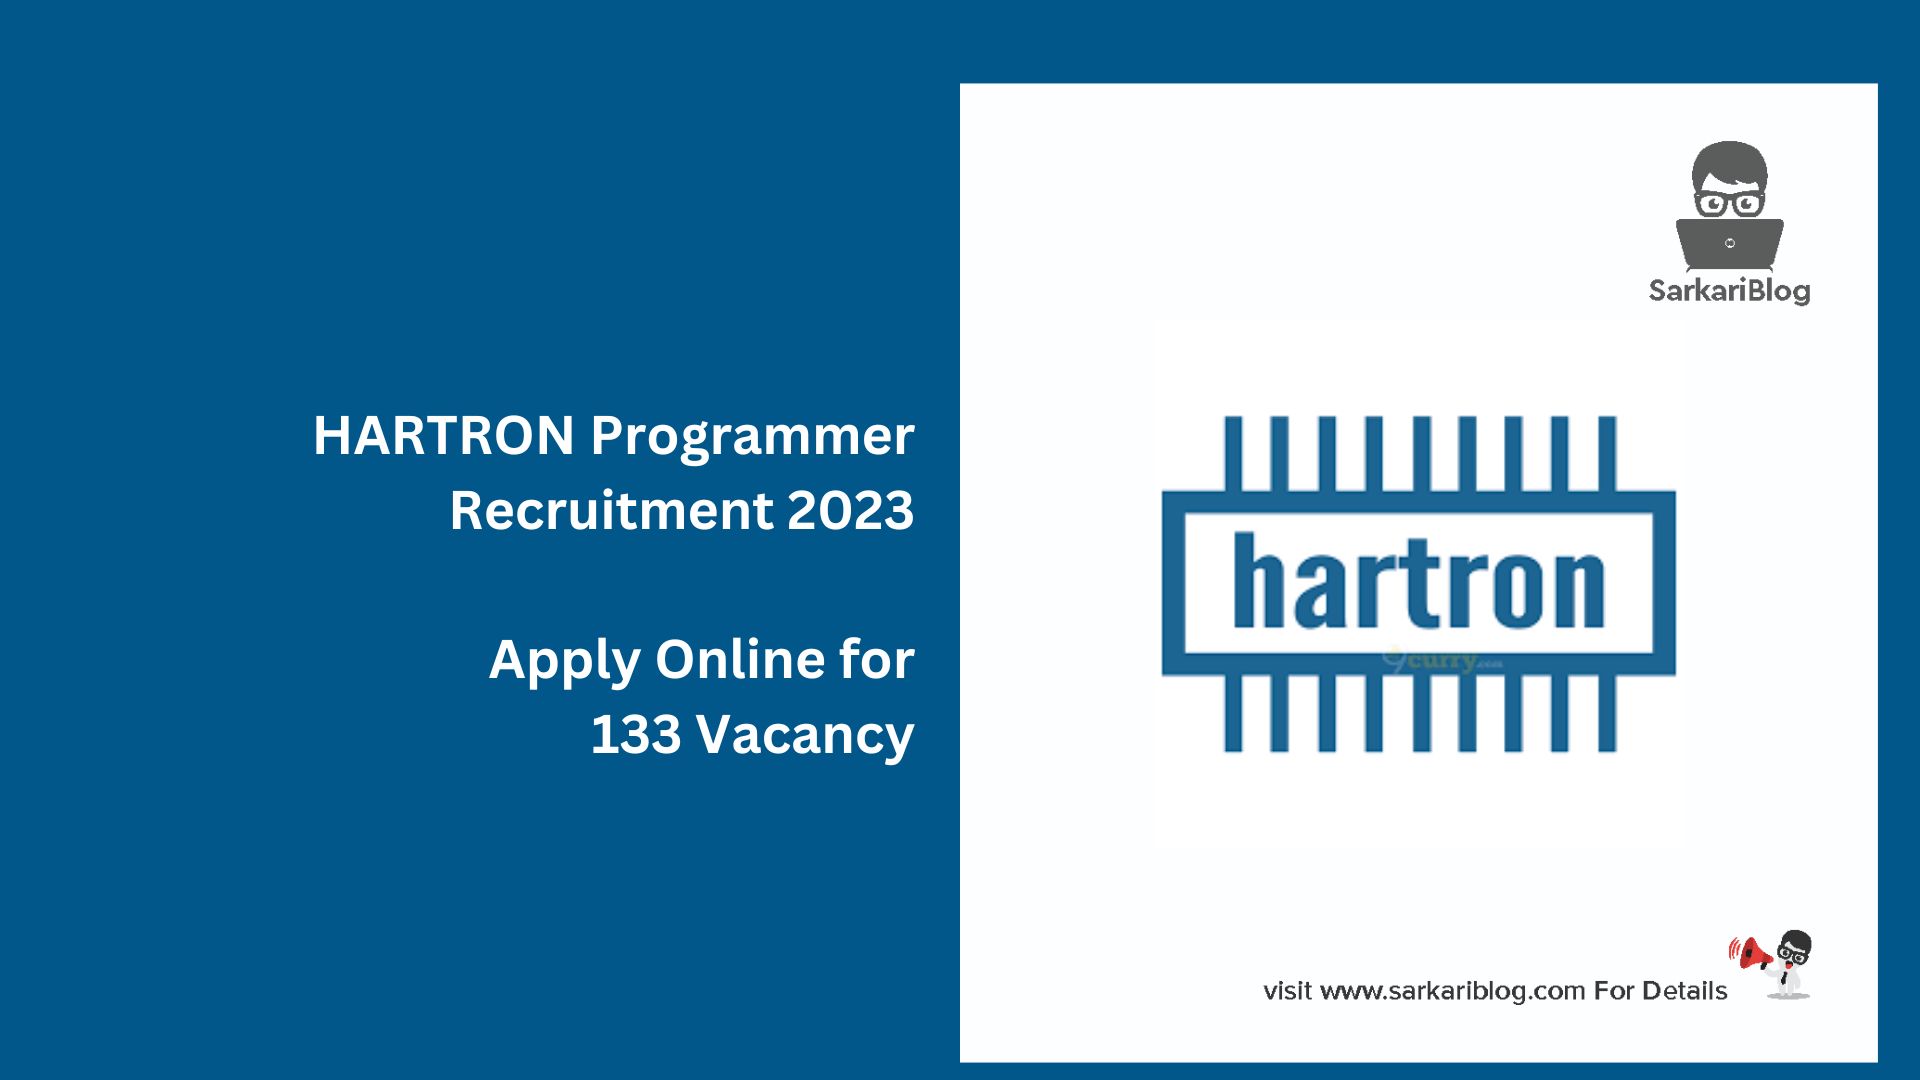 HARTRON Programmer Recruitment 2023